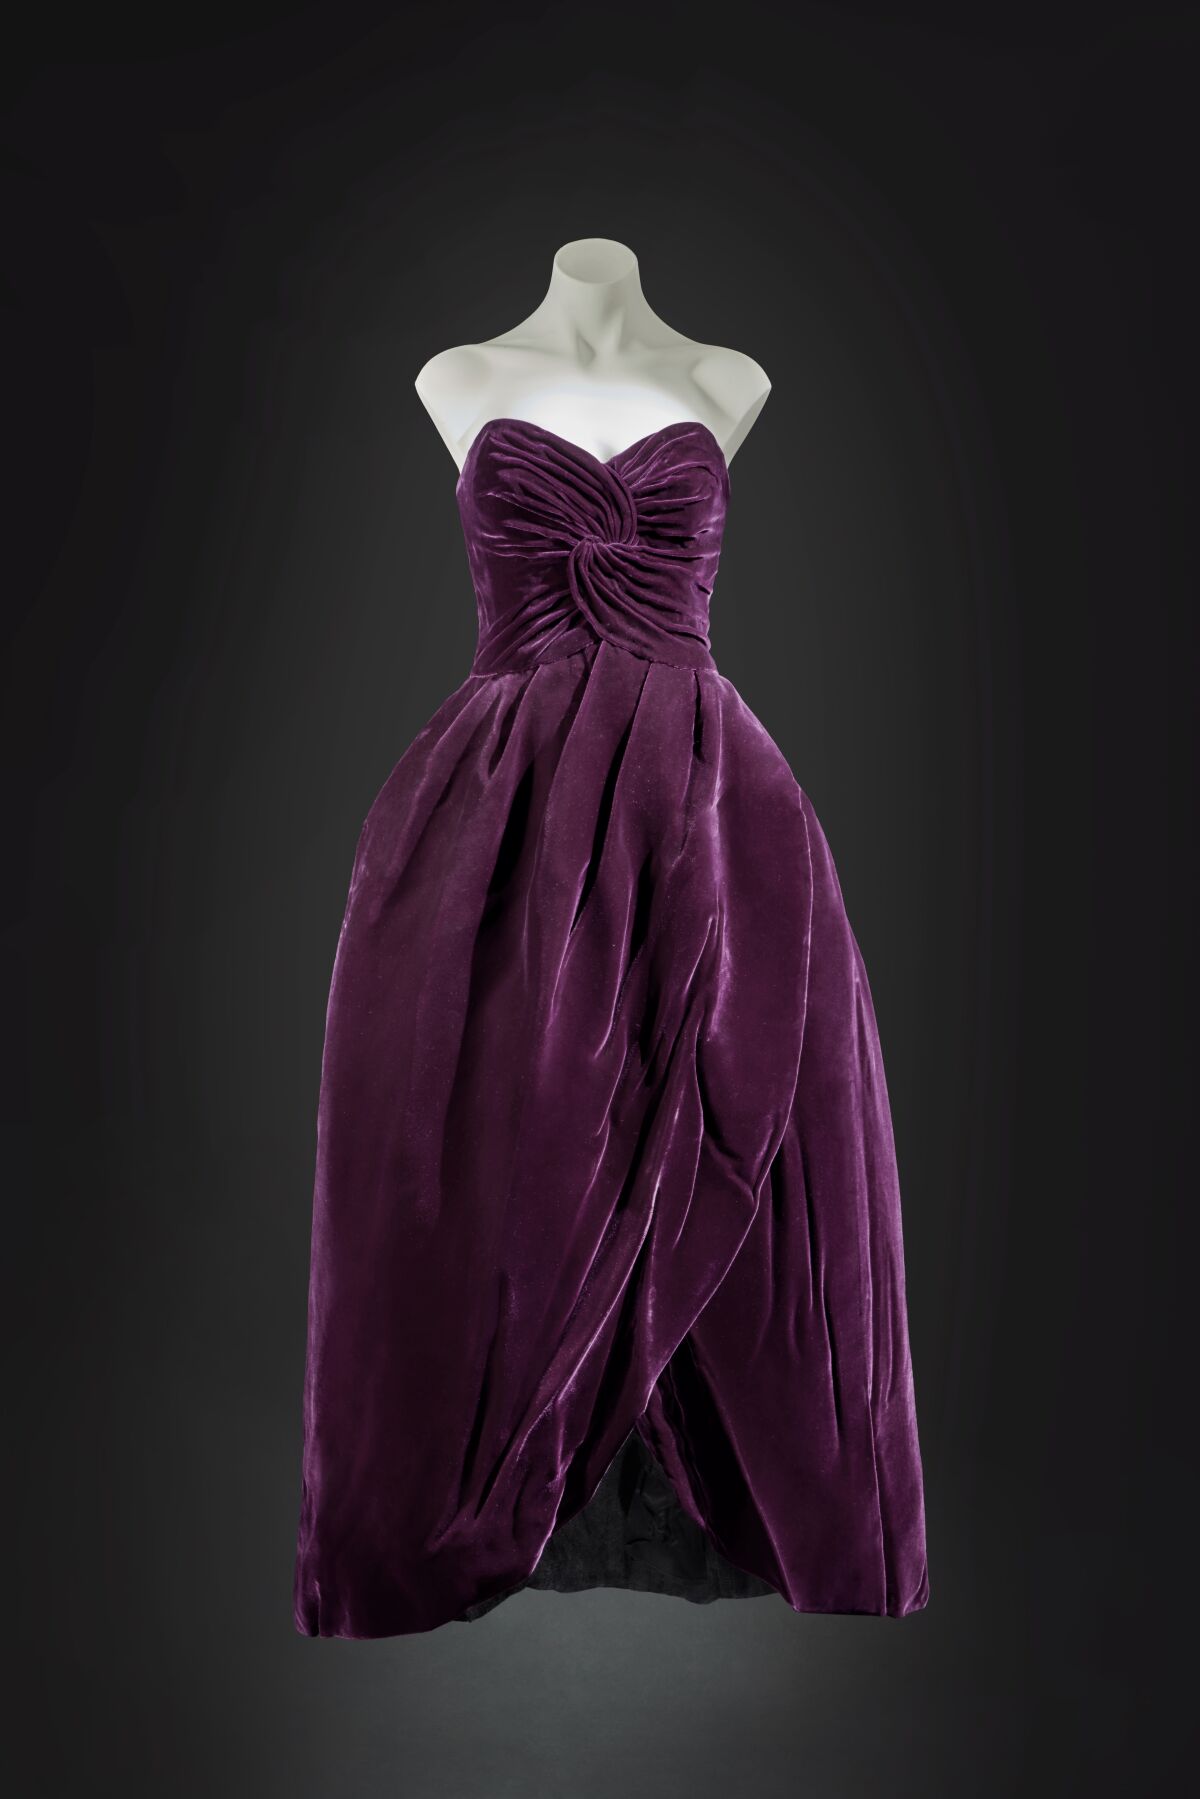 Uno de los vestidos favoritos de Lady Di, subastado por 600.000 dólares